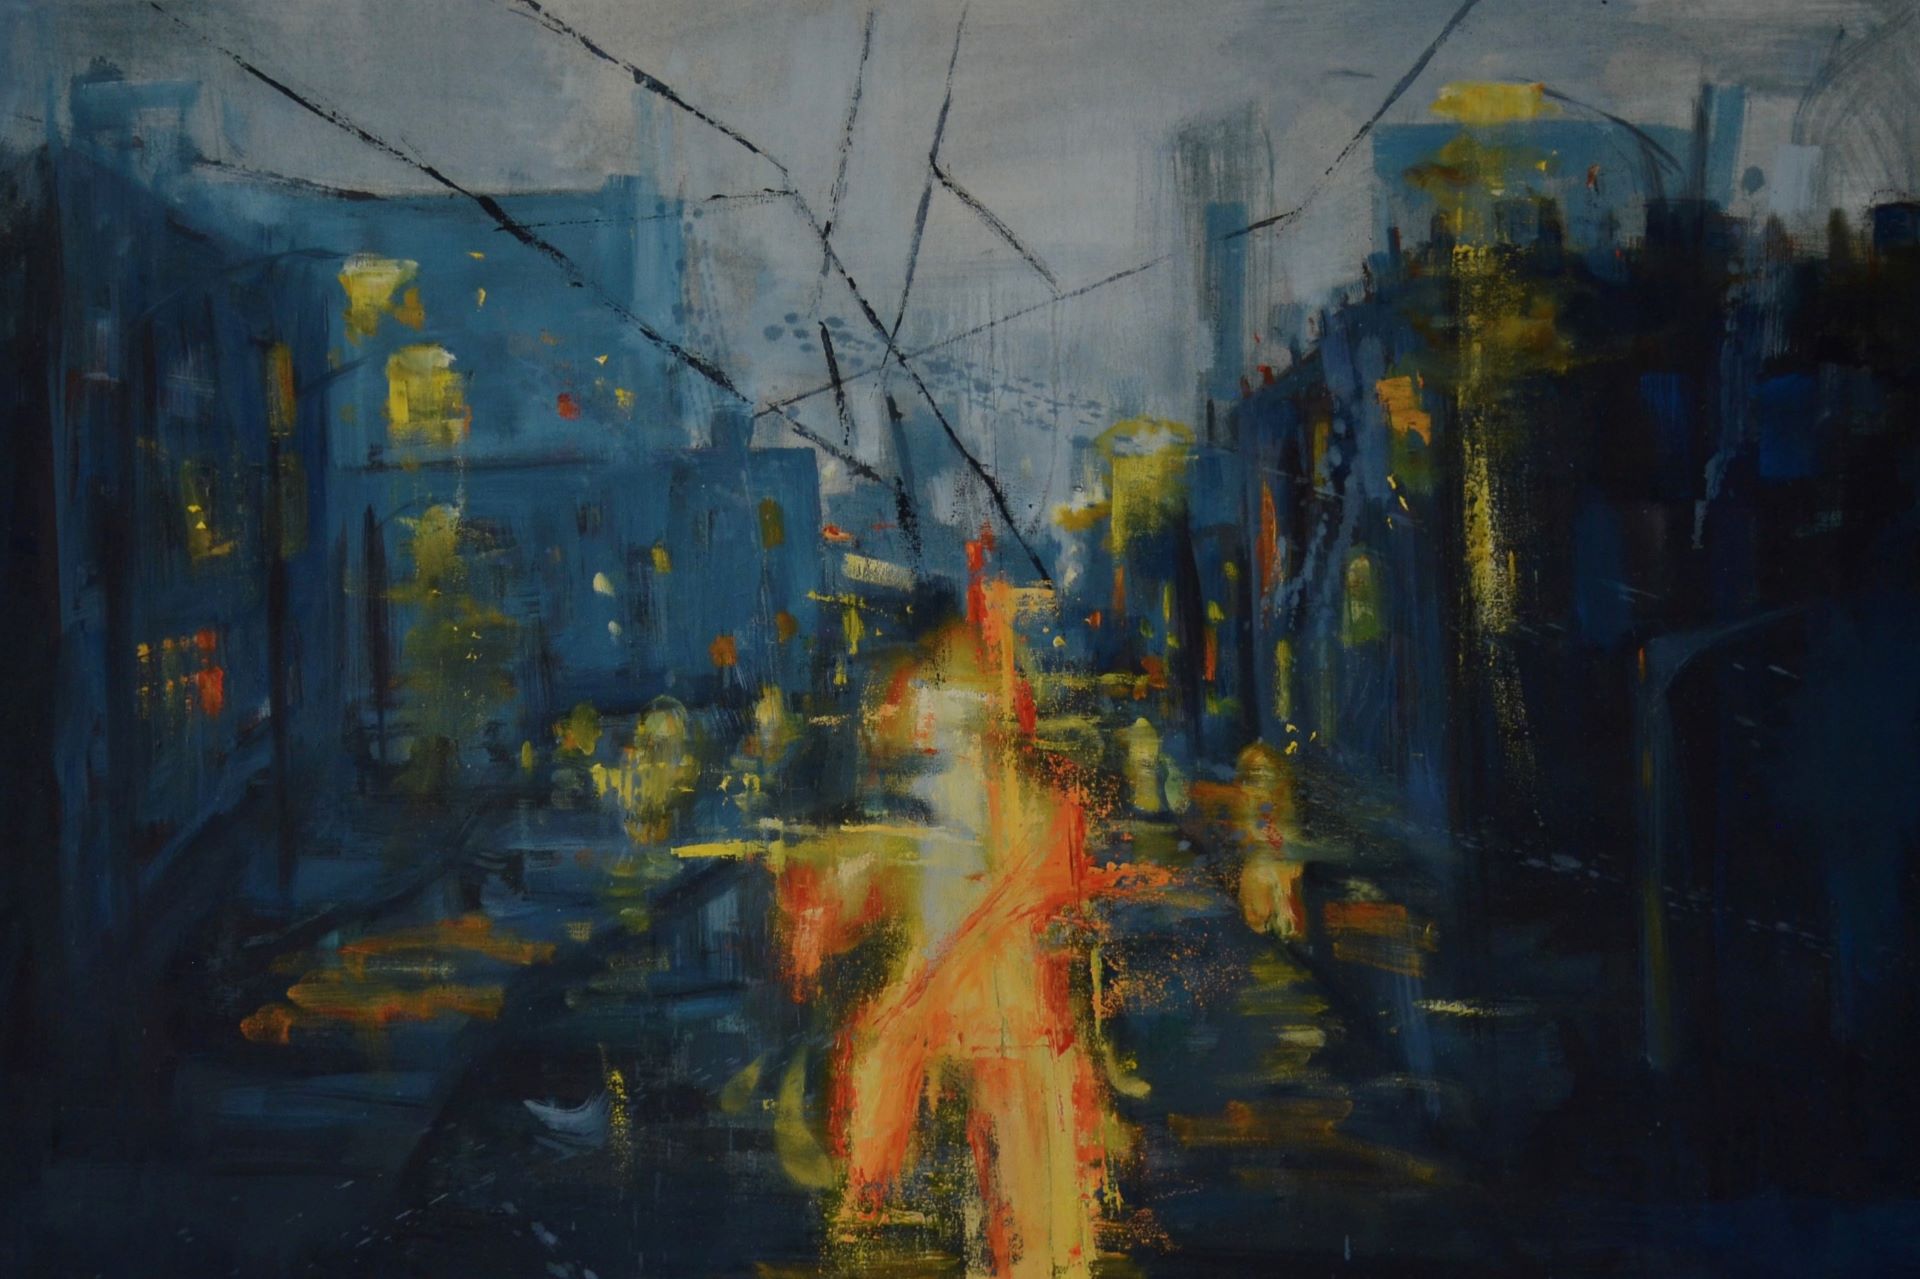 Obraz przedstawia ulicę w zniszczonym mieście, na której pierwszym planie widoczna jest rozświetlona, płonąca figura. Kontrastowa tonacja od jasnych żółcieni po ciemne granaty podkreśla ideę obrazu.